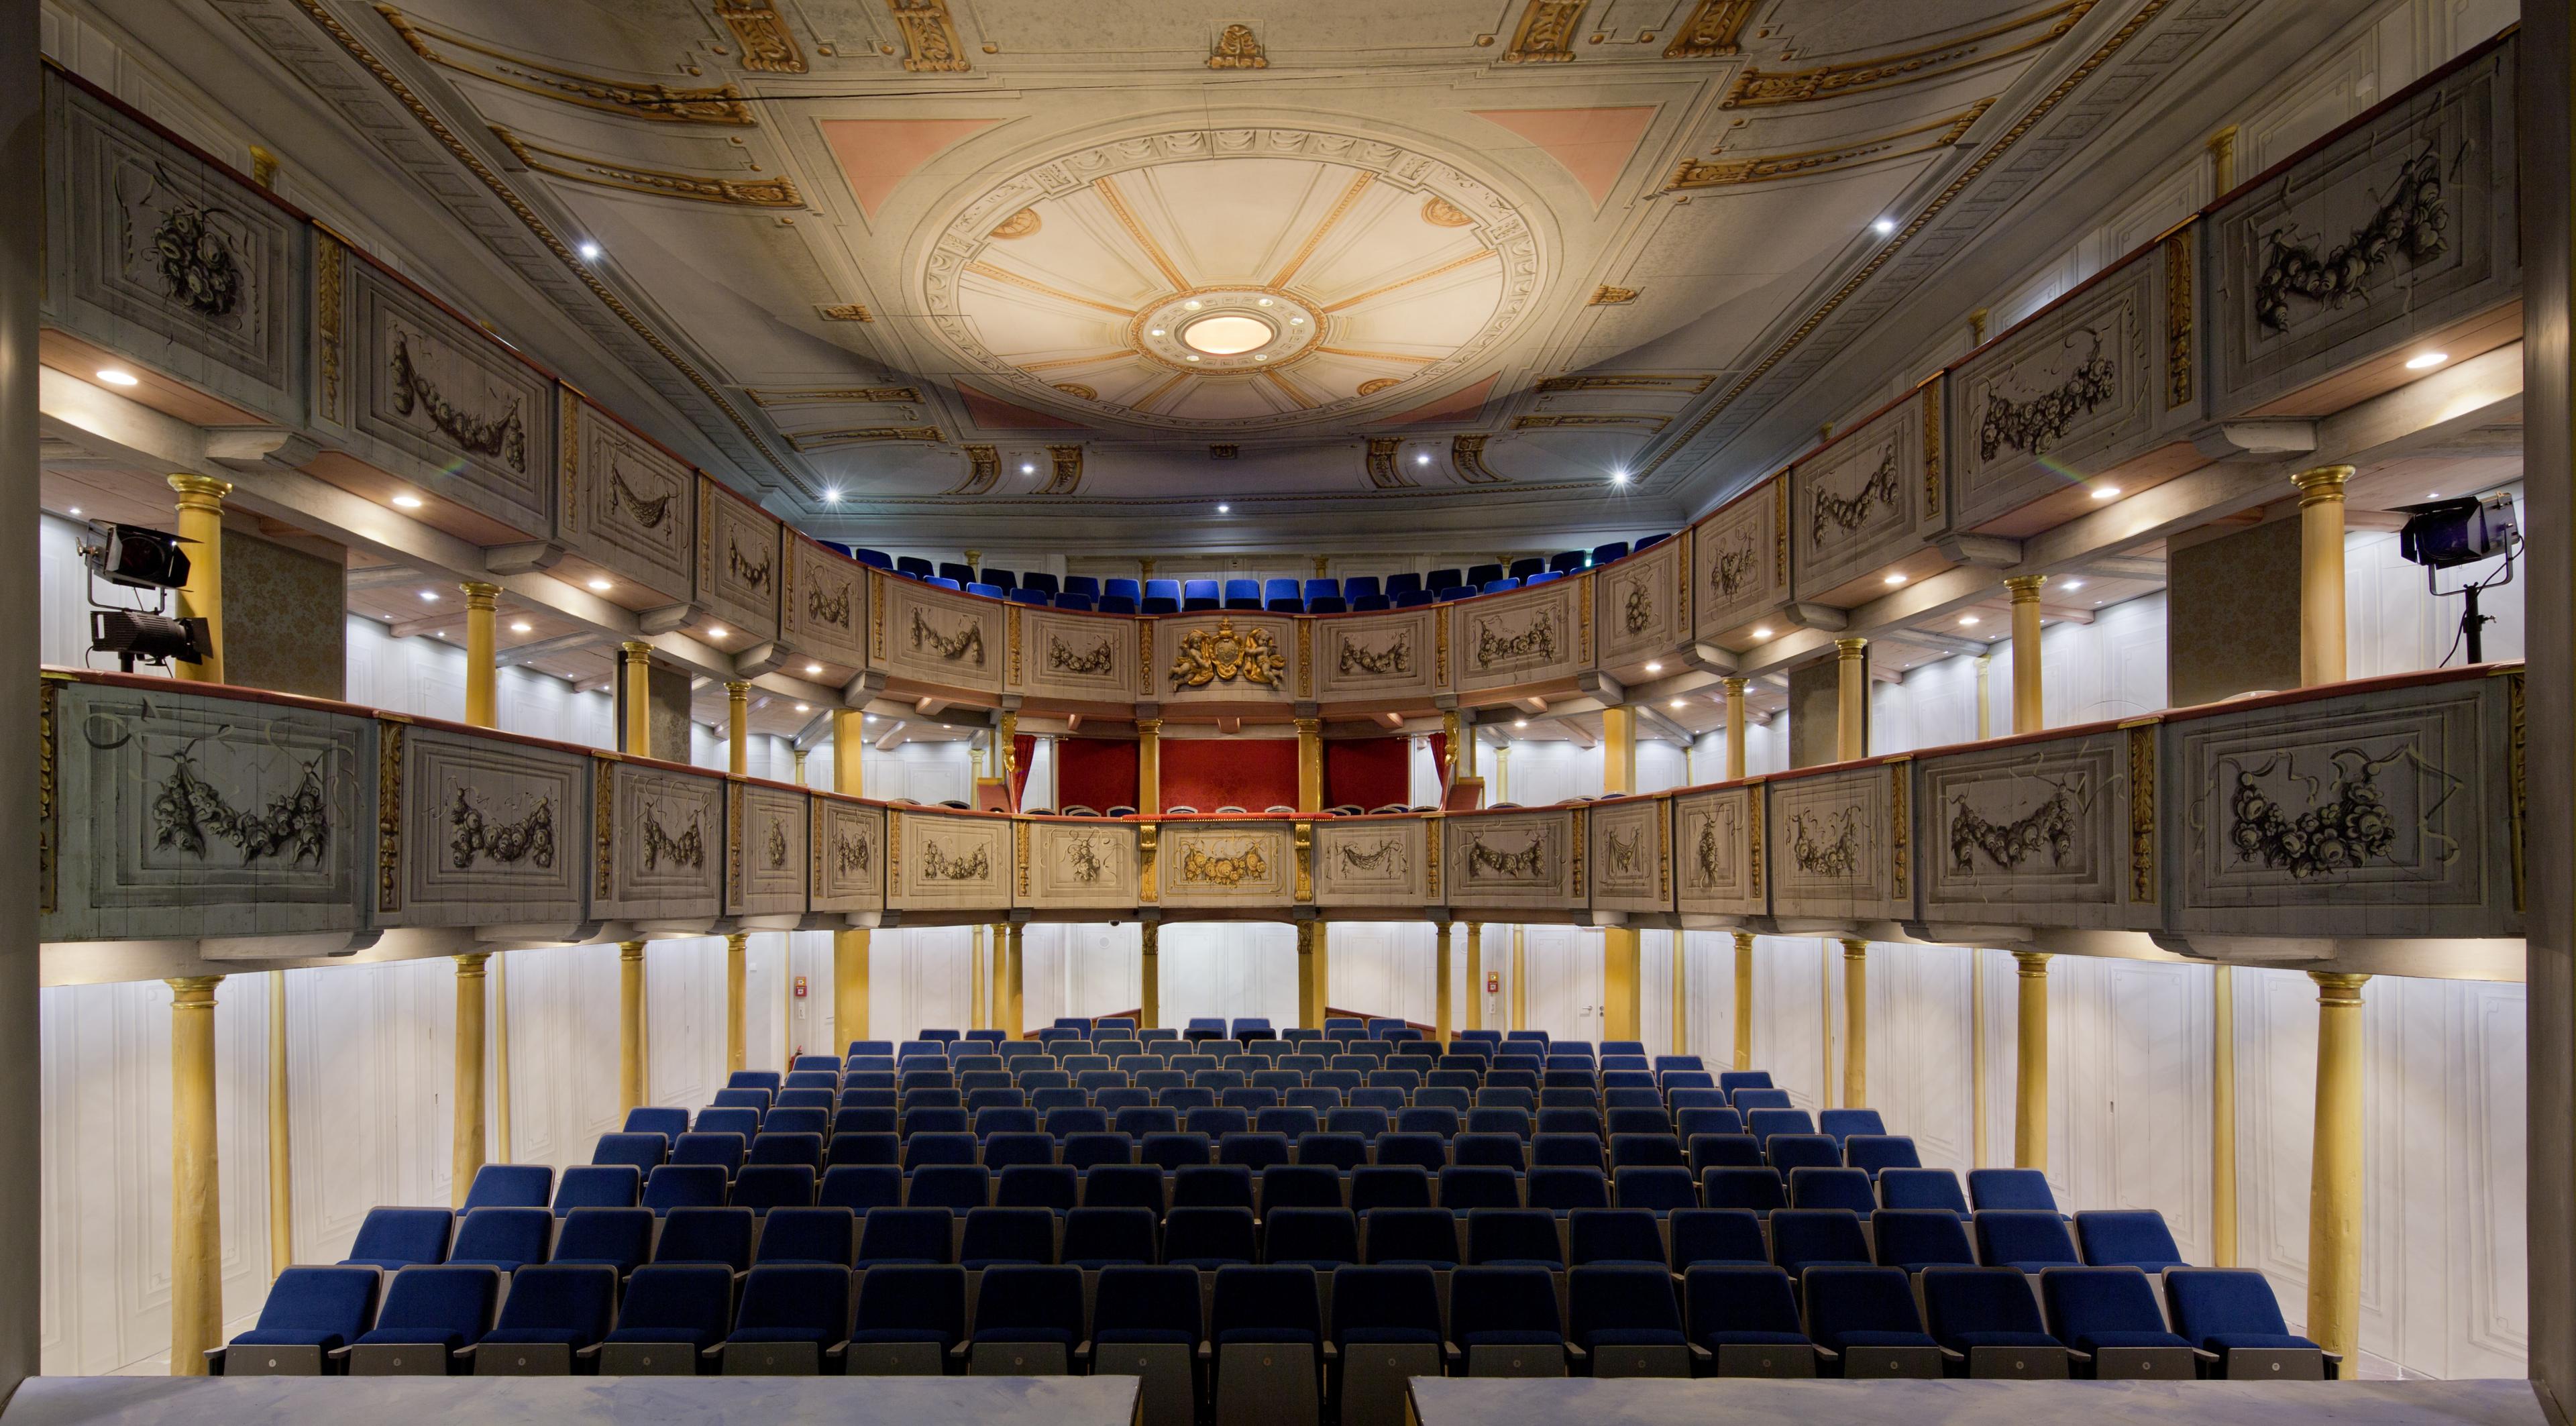 Blick in das Schlosstheater von der Bühne aus. Zu sehen sind die beiden ornamentverzierten Ränge und der untere Zuschauerraum mit seinen blau bespannten Sitzen.